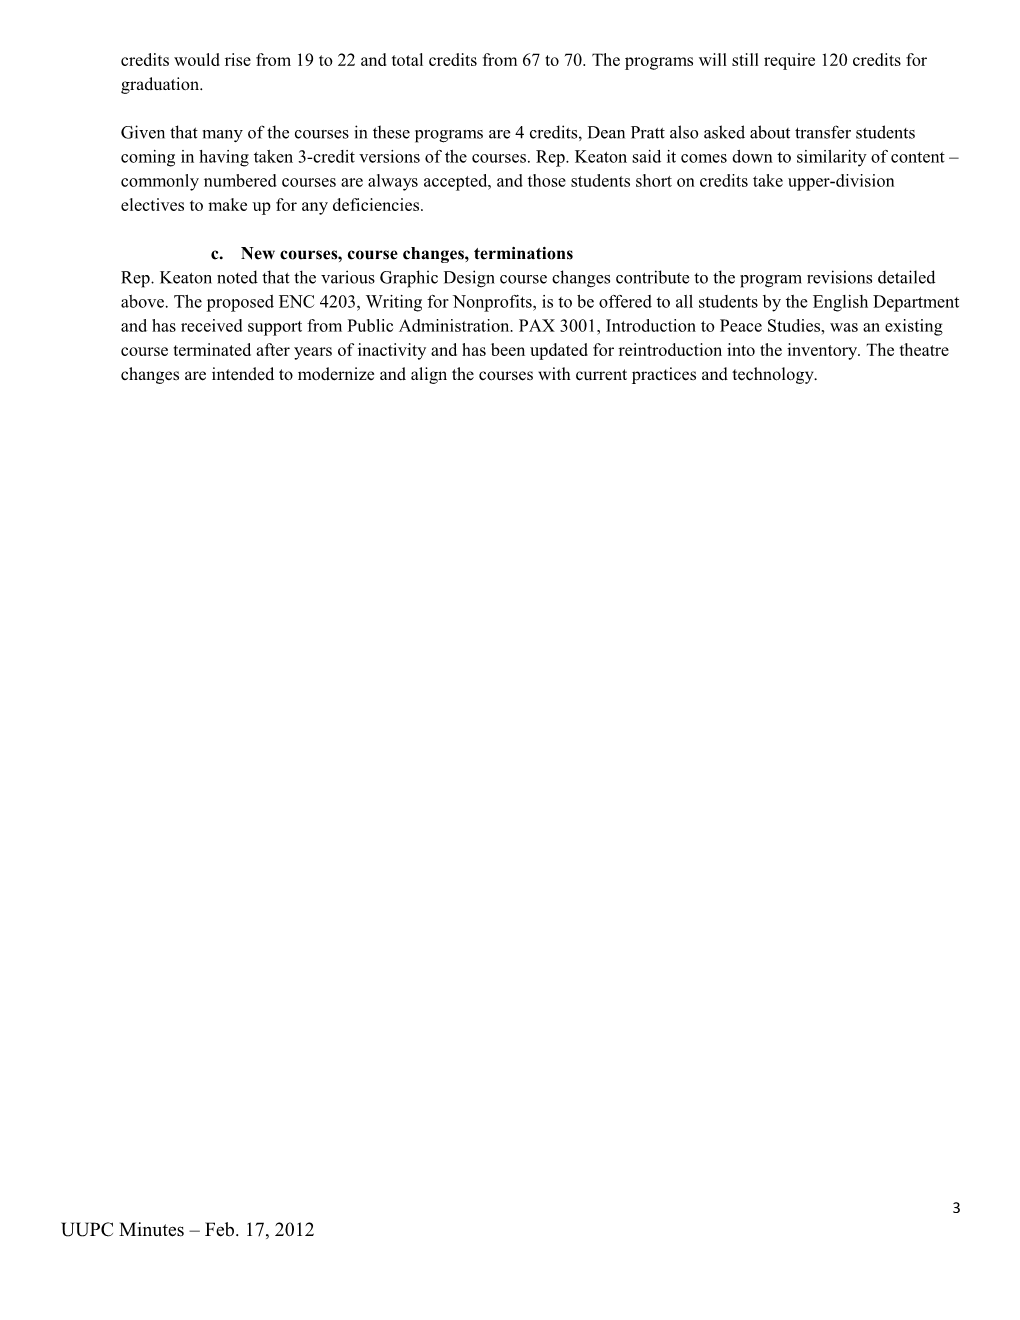 University Undergraduate Programs Committee (UUPC) Minutes Feb. 17, 2012